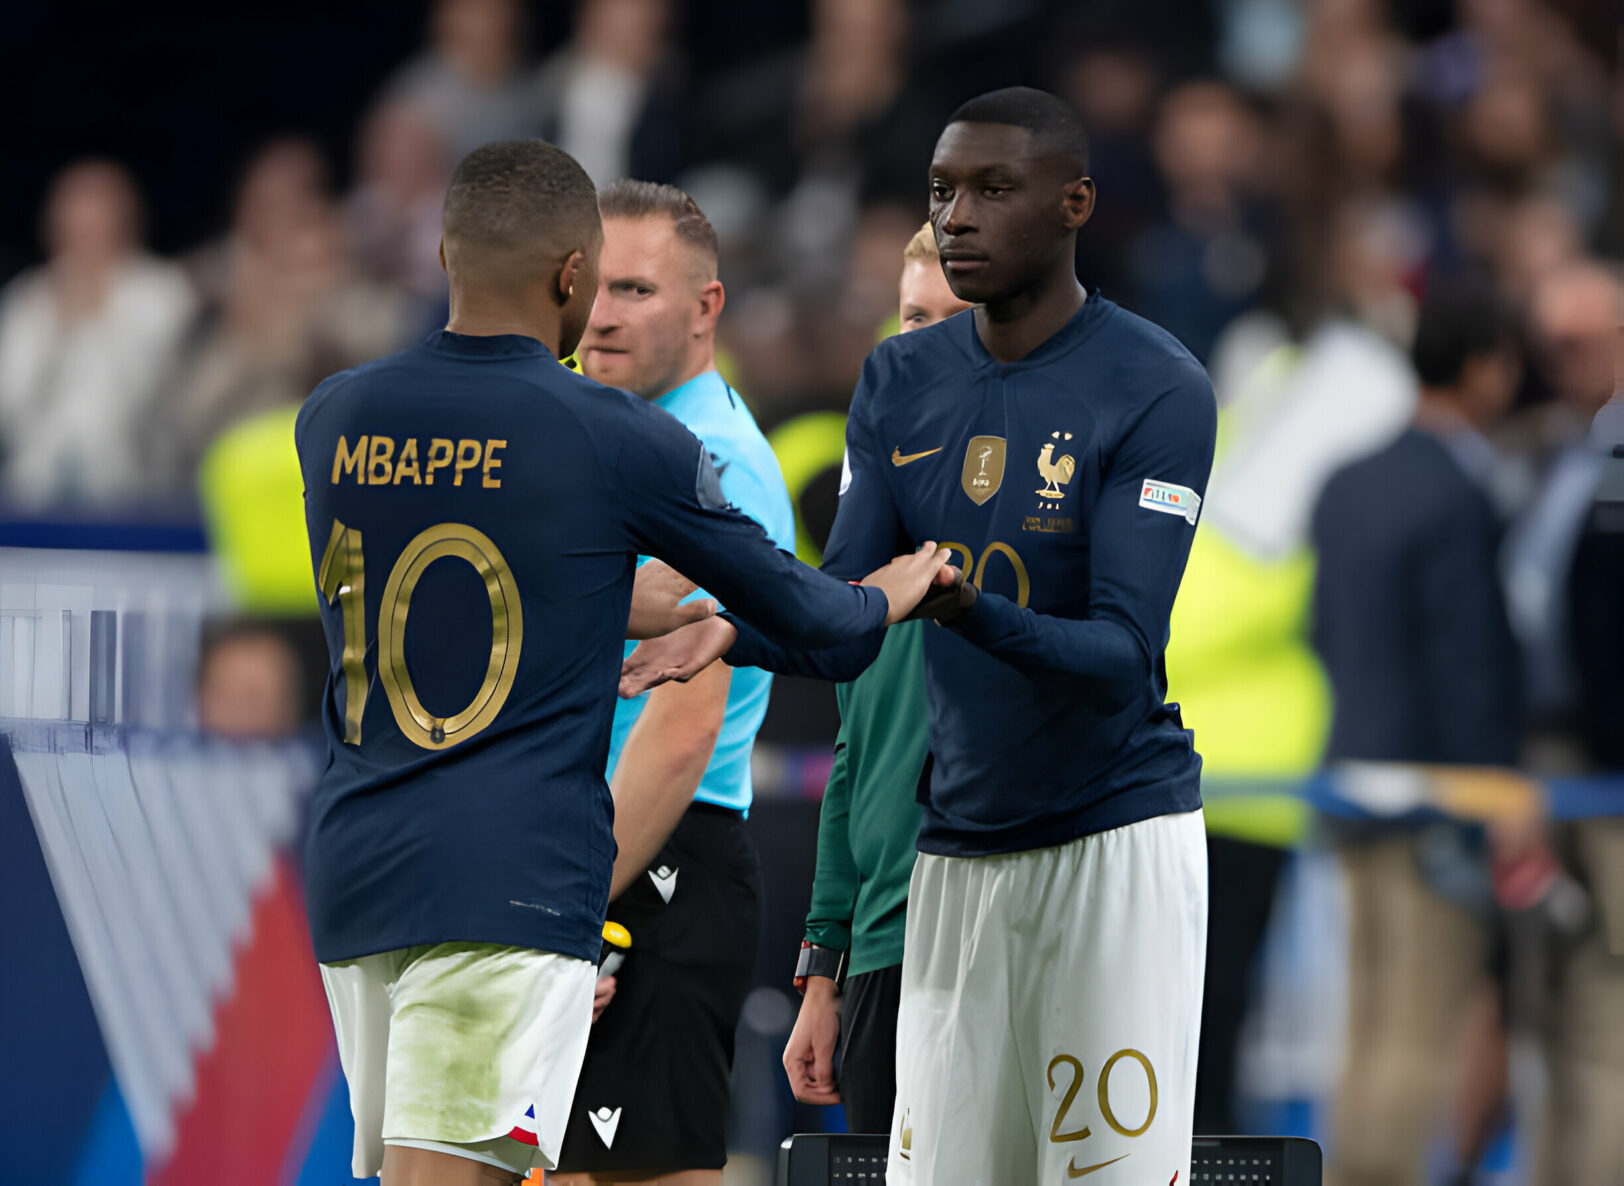 Mondial 2022 : Kolo Muani fait une grosse révélation sur la finale et Mbappé